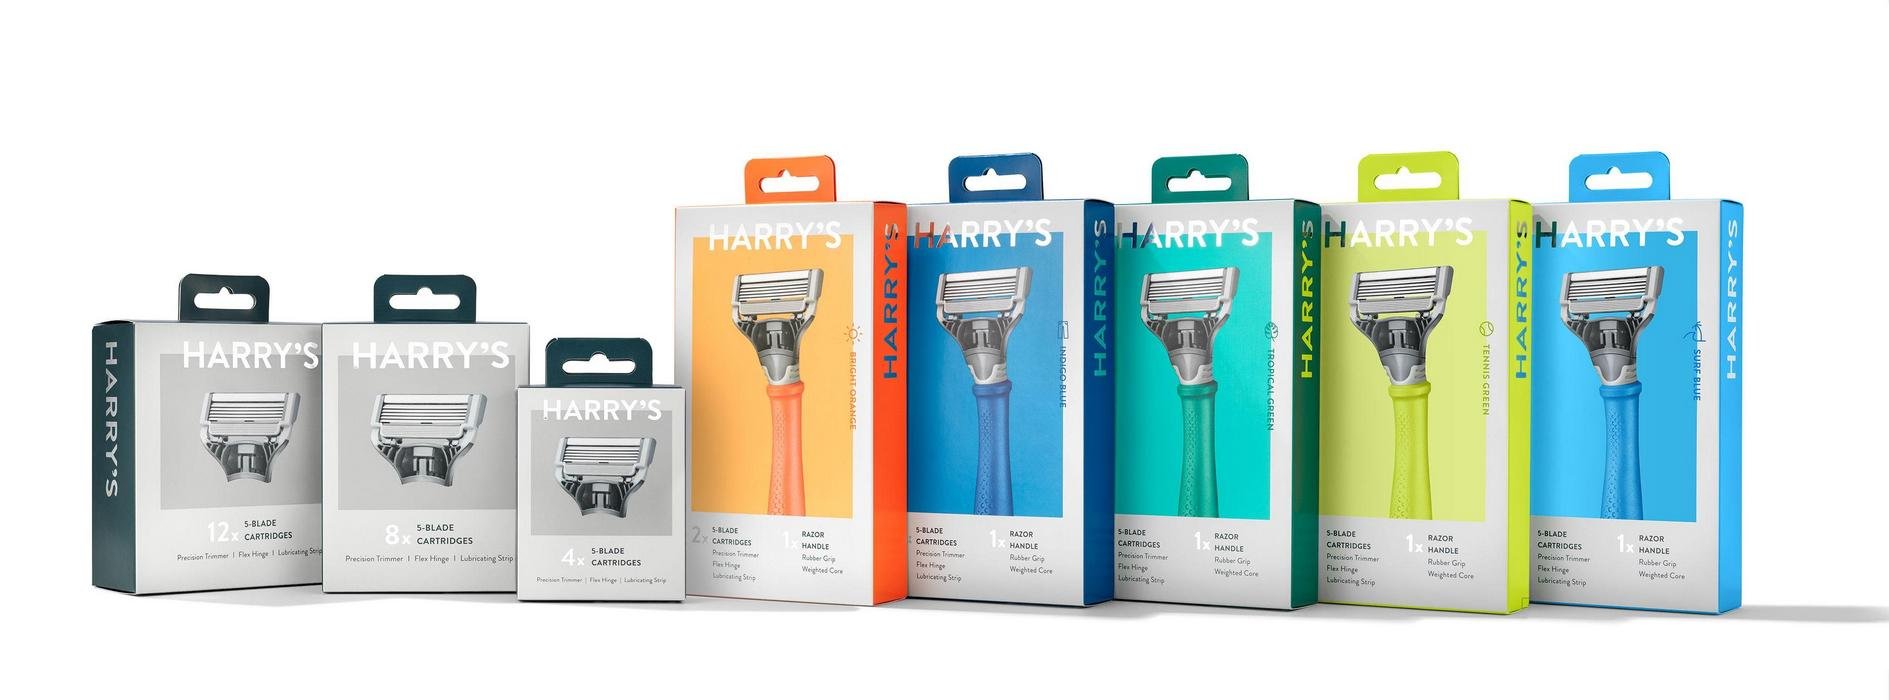 harry's shaving razor packaging design